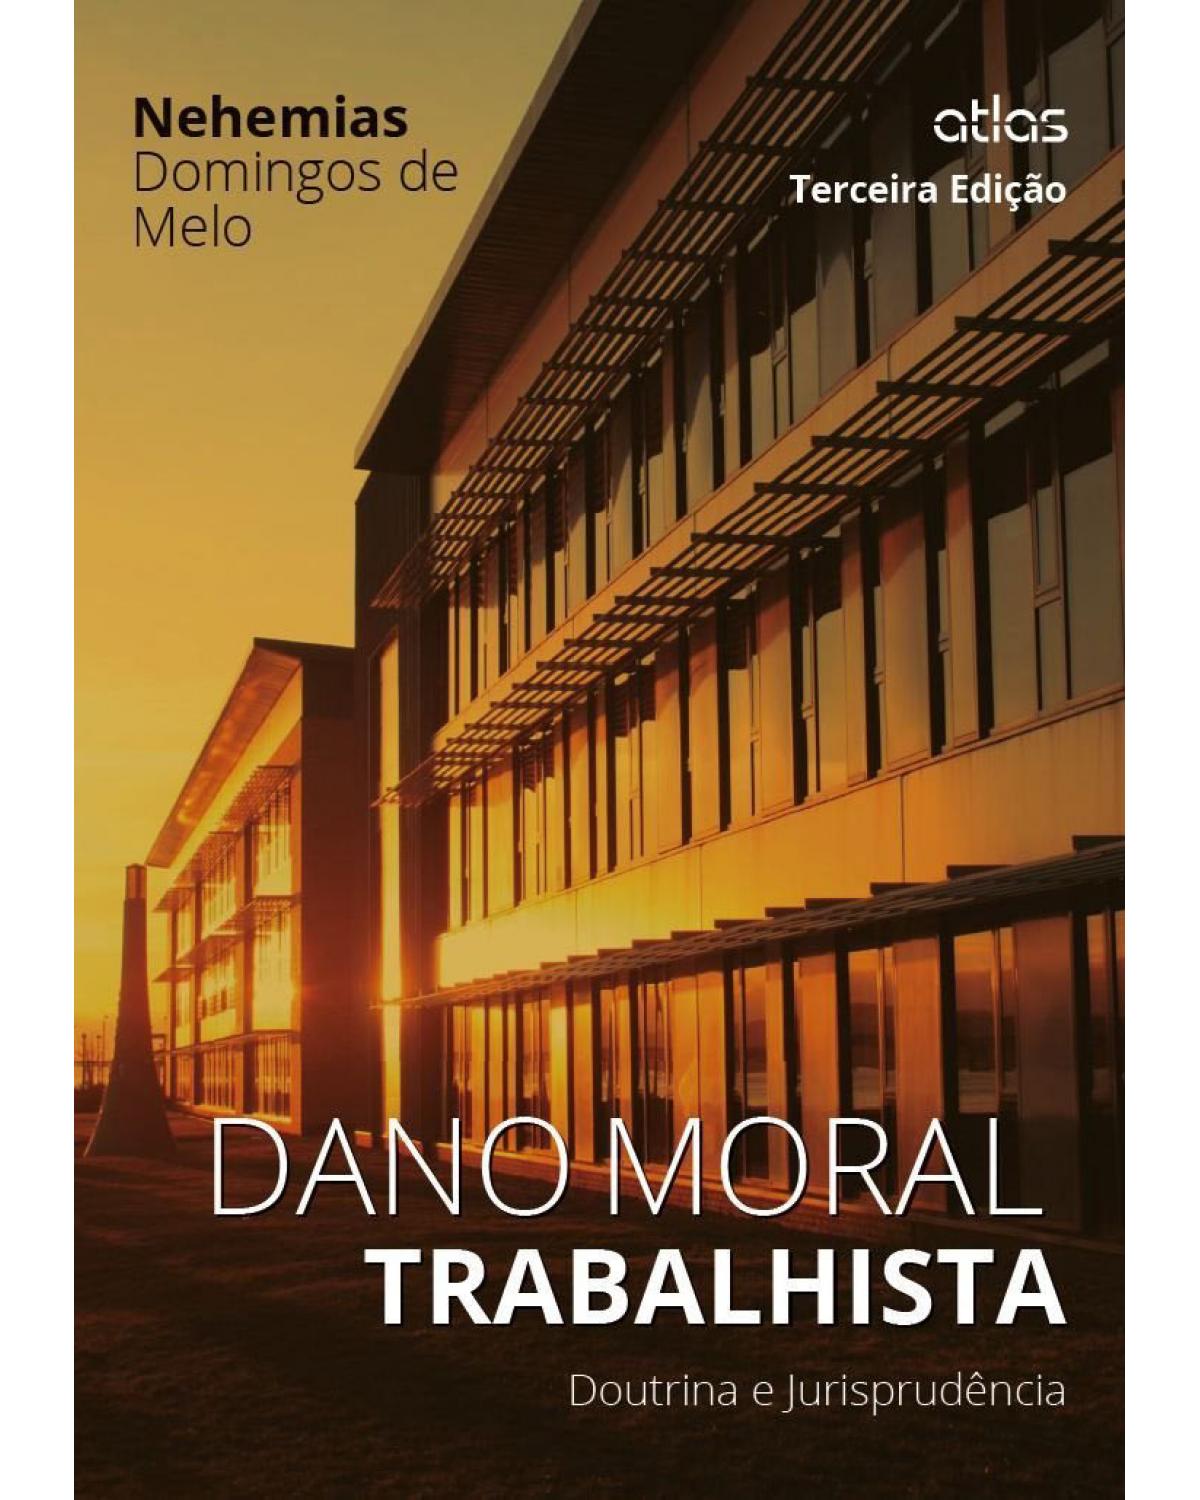 Dano moral trabalhista: Doutrina e jurisprudência - 3ª Edição